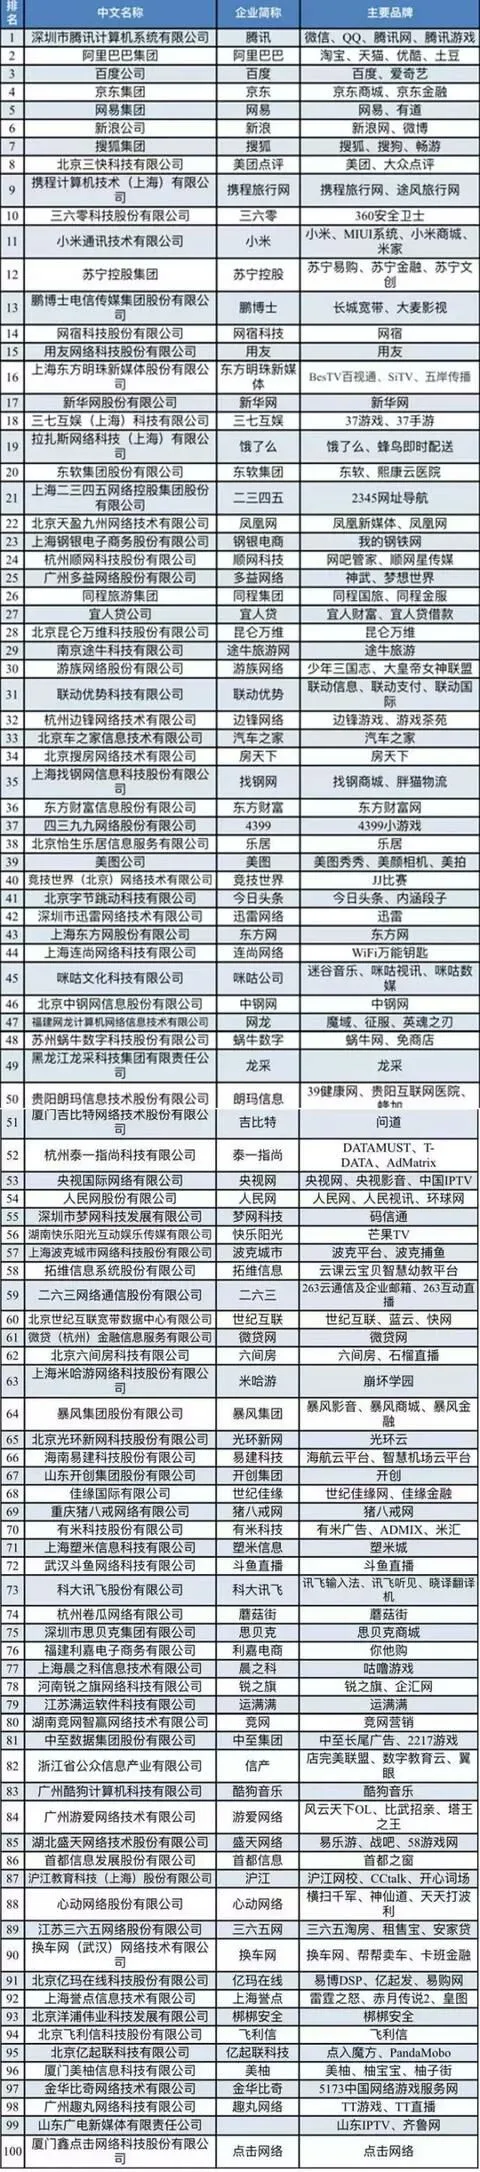 2017中国互联网企业100强揭晓 新浪排名第六